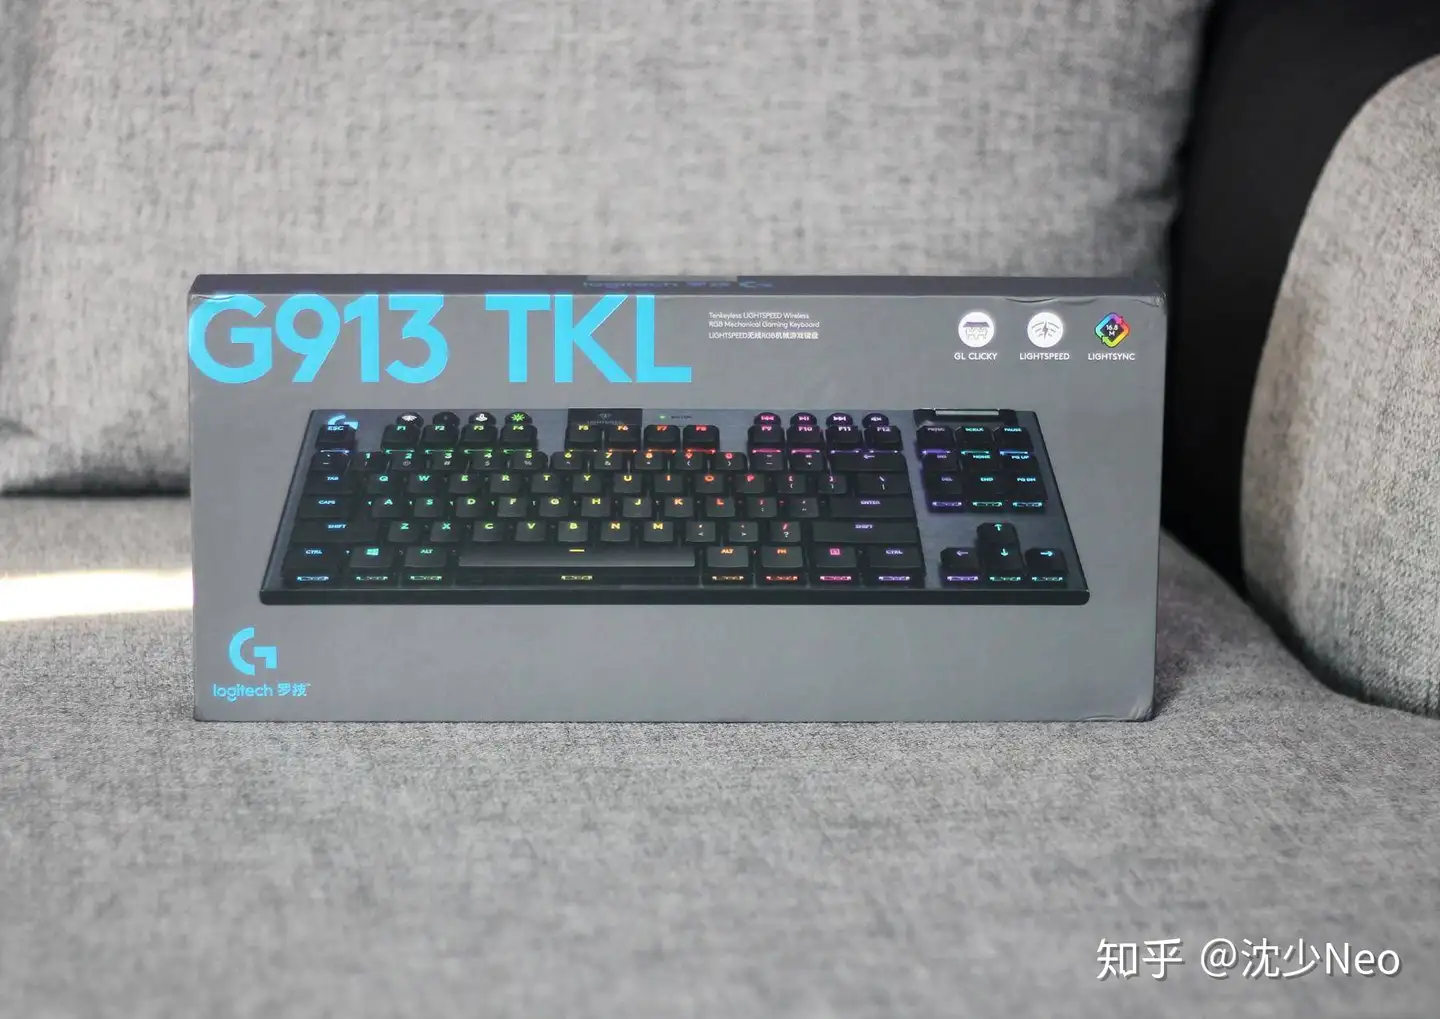 宜家宜商的高端无线矮轴机械键盘- 罗技G913 TKL 评测报告- 知乎